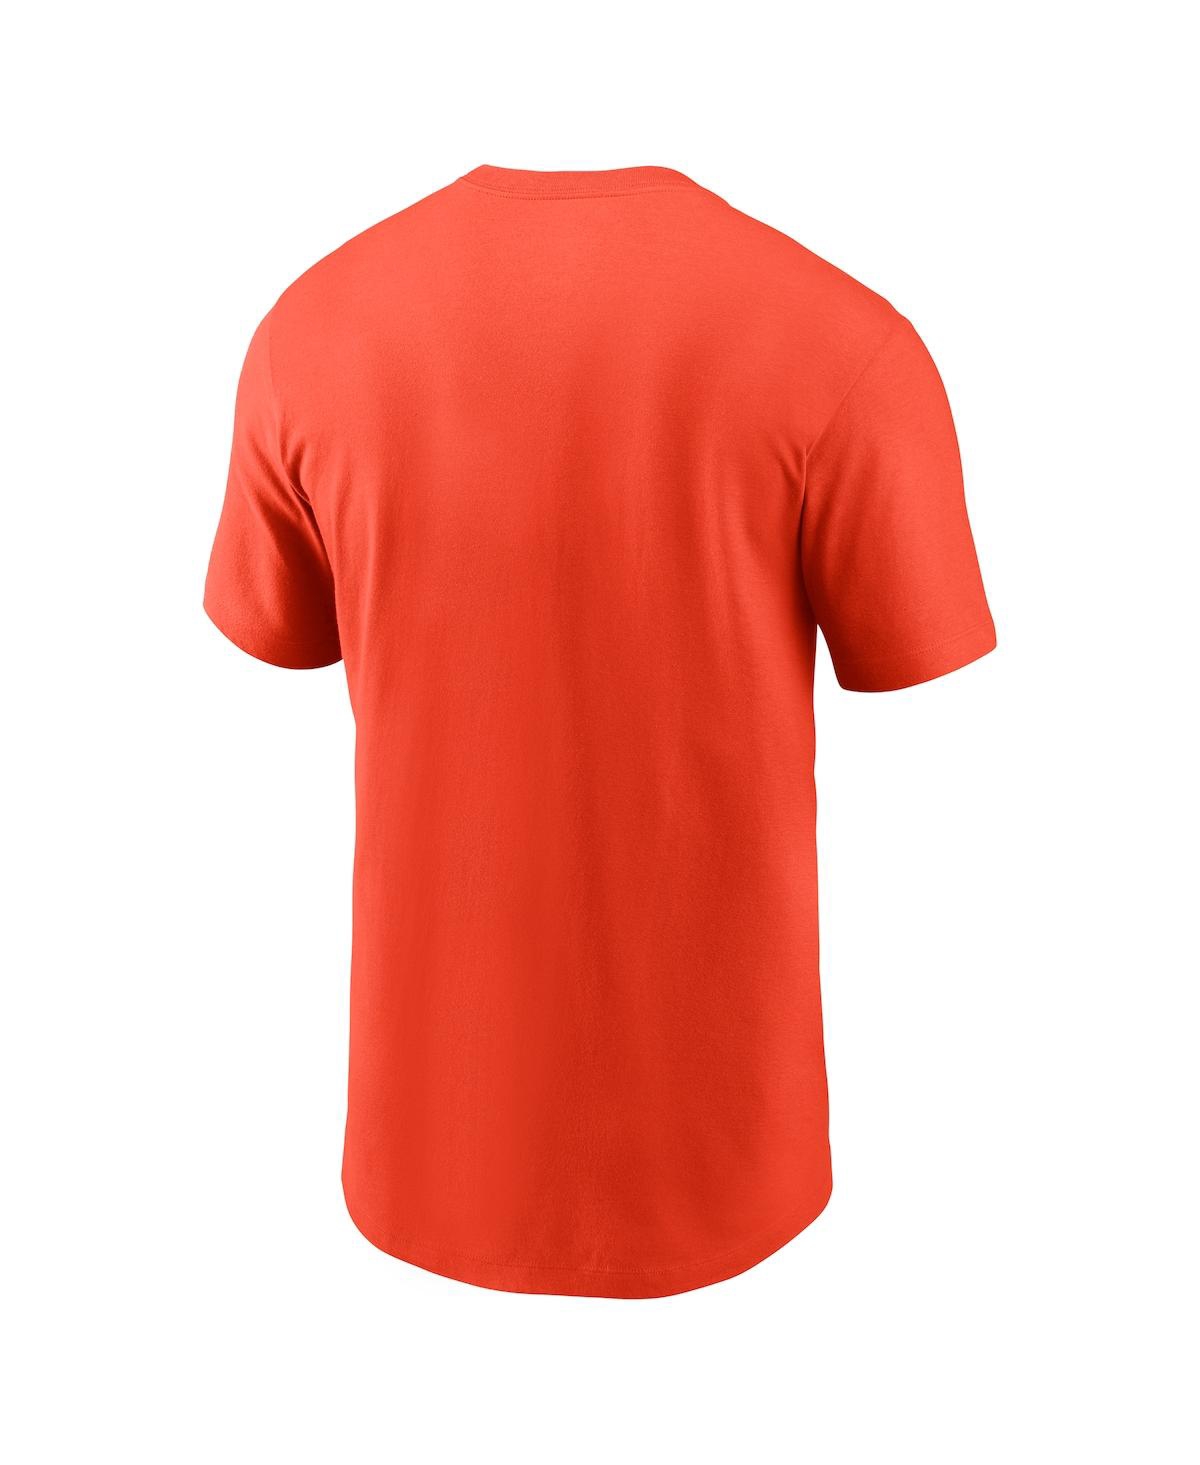 Shop Nike Men's  Orange Cleveland Browns Team Athletic T-shirt